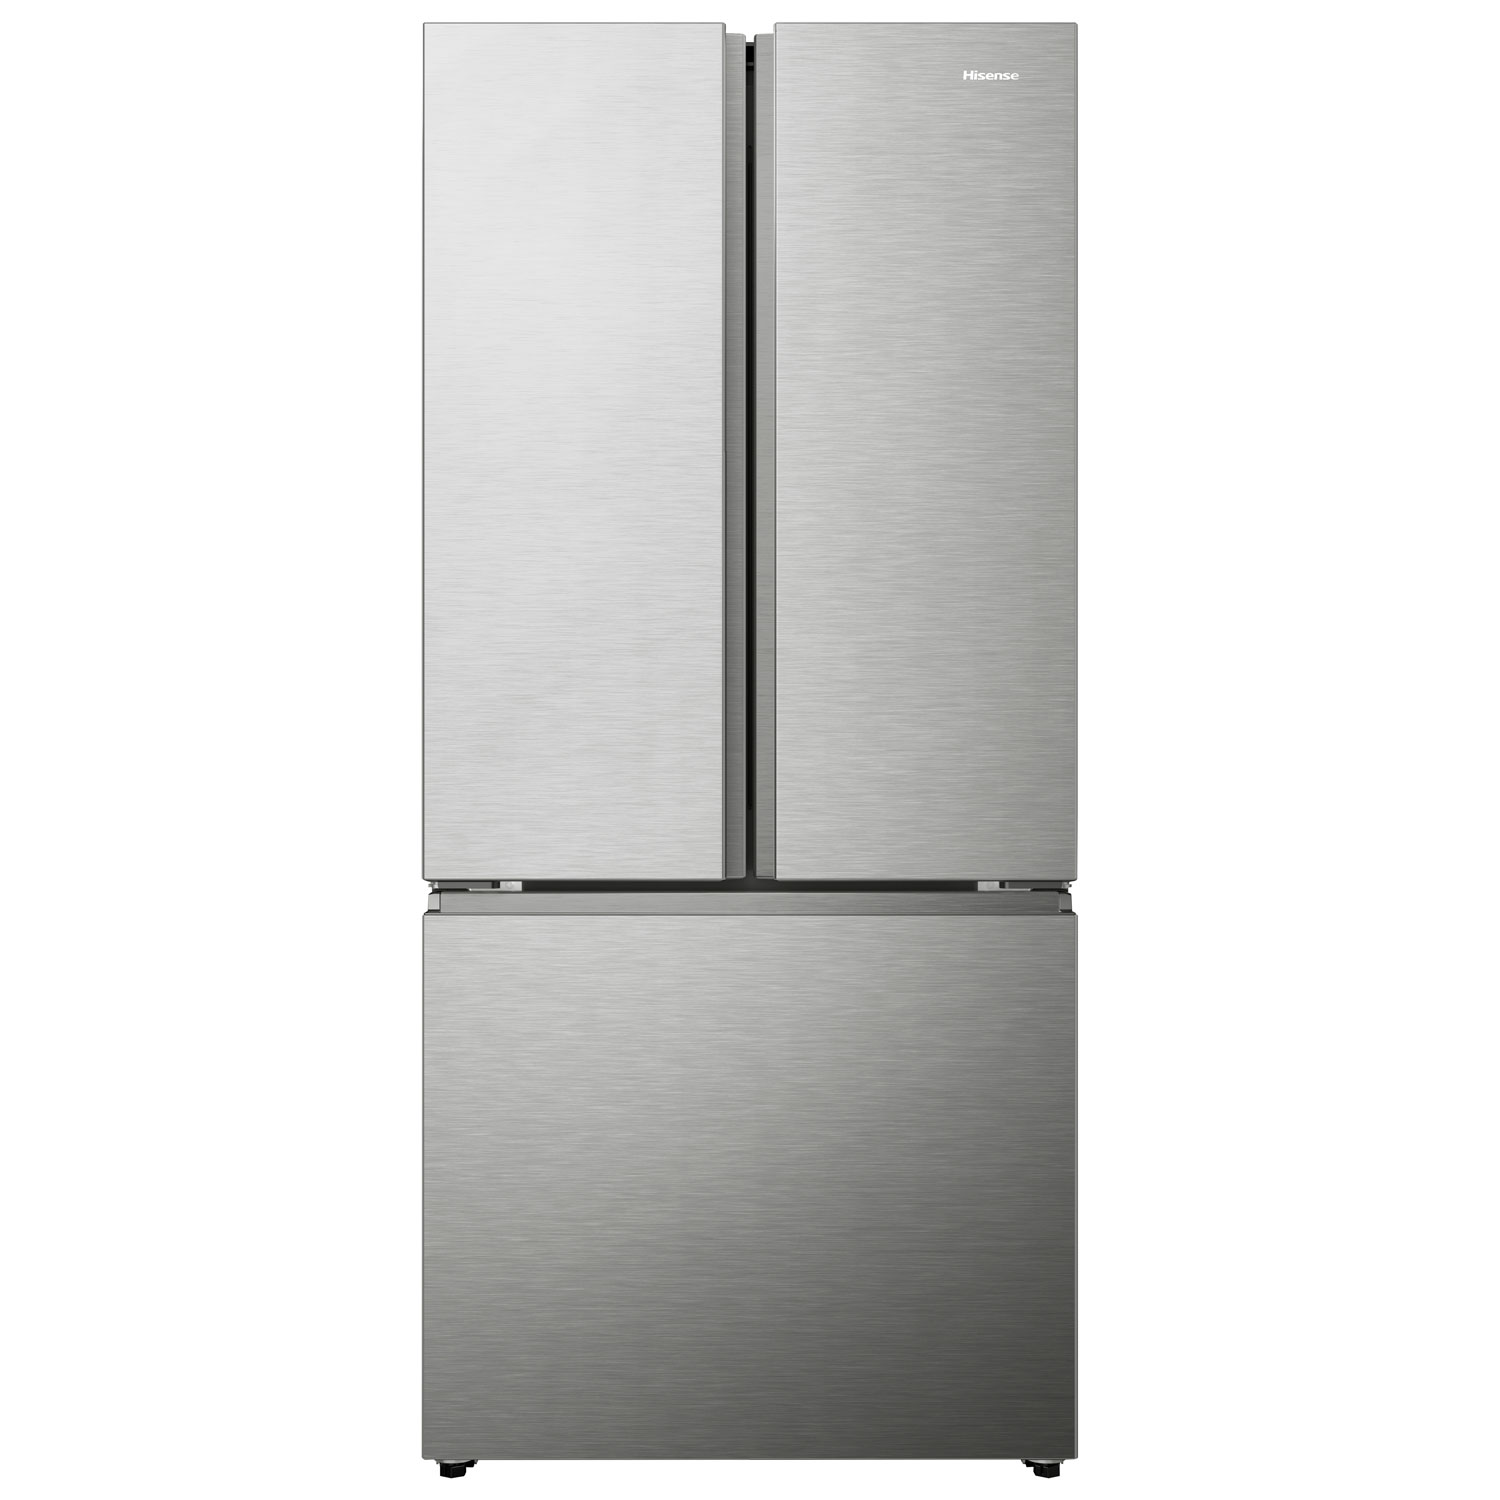 Hisense 30" 20.8 Cu. Ft. French Door Refrigerator (RF210N6ASE) - Stainless Steel